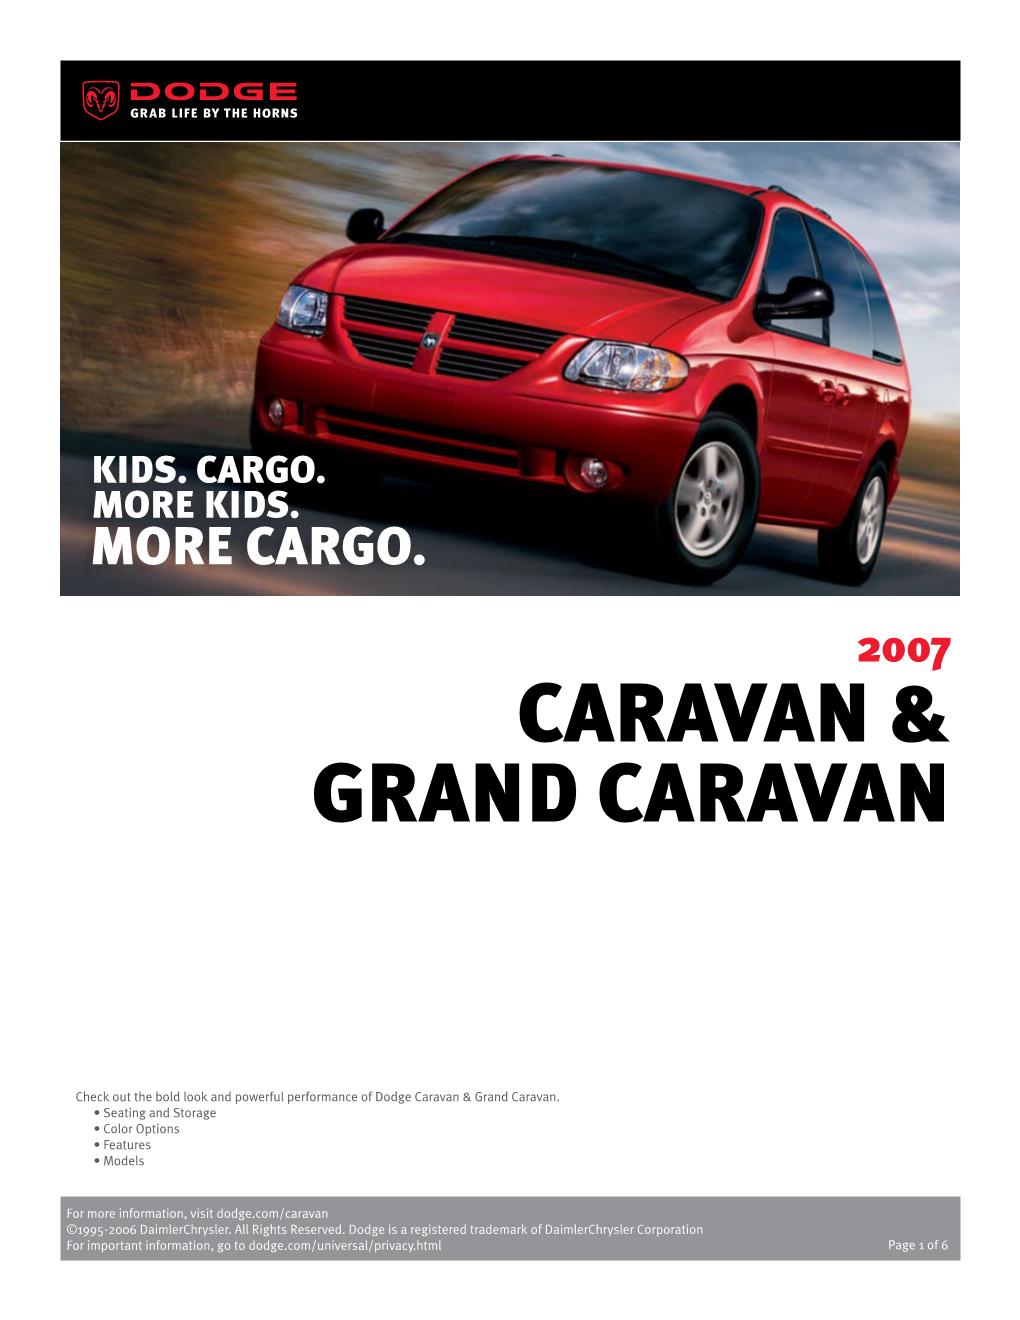 Caravan & Grand Caravan